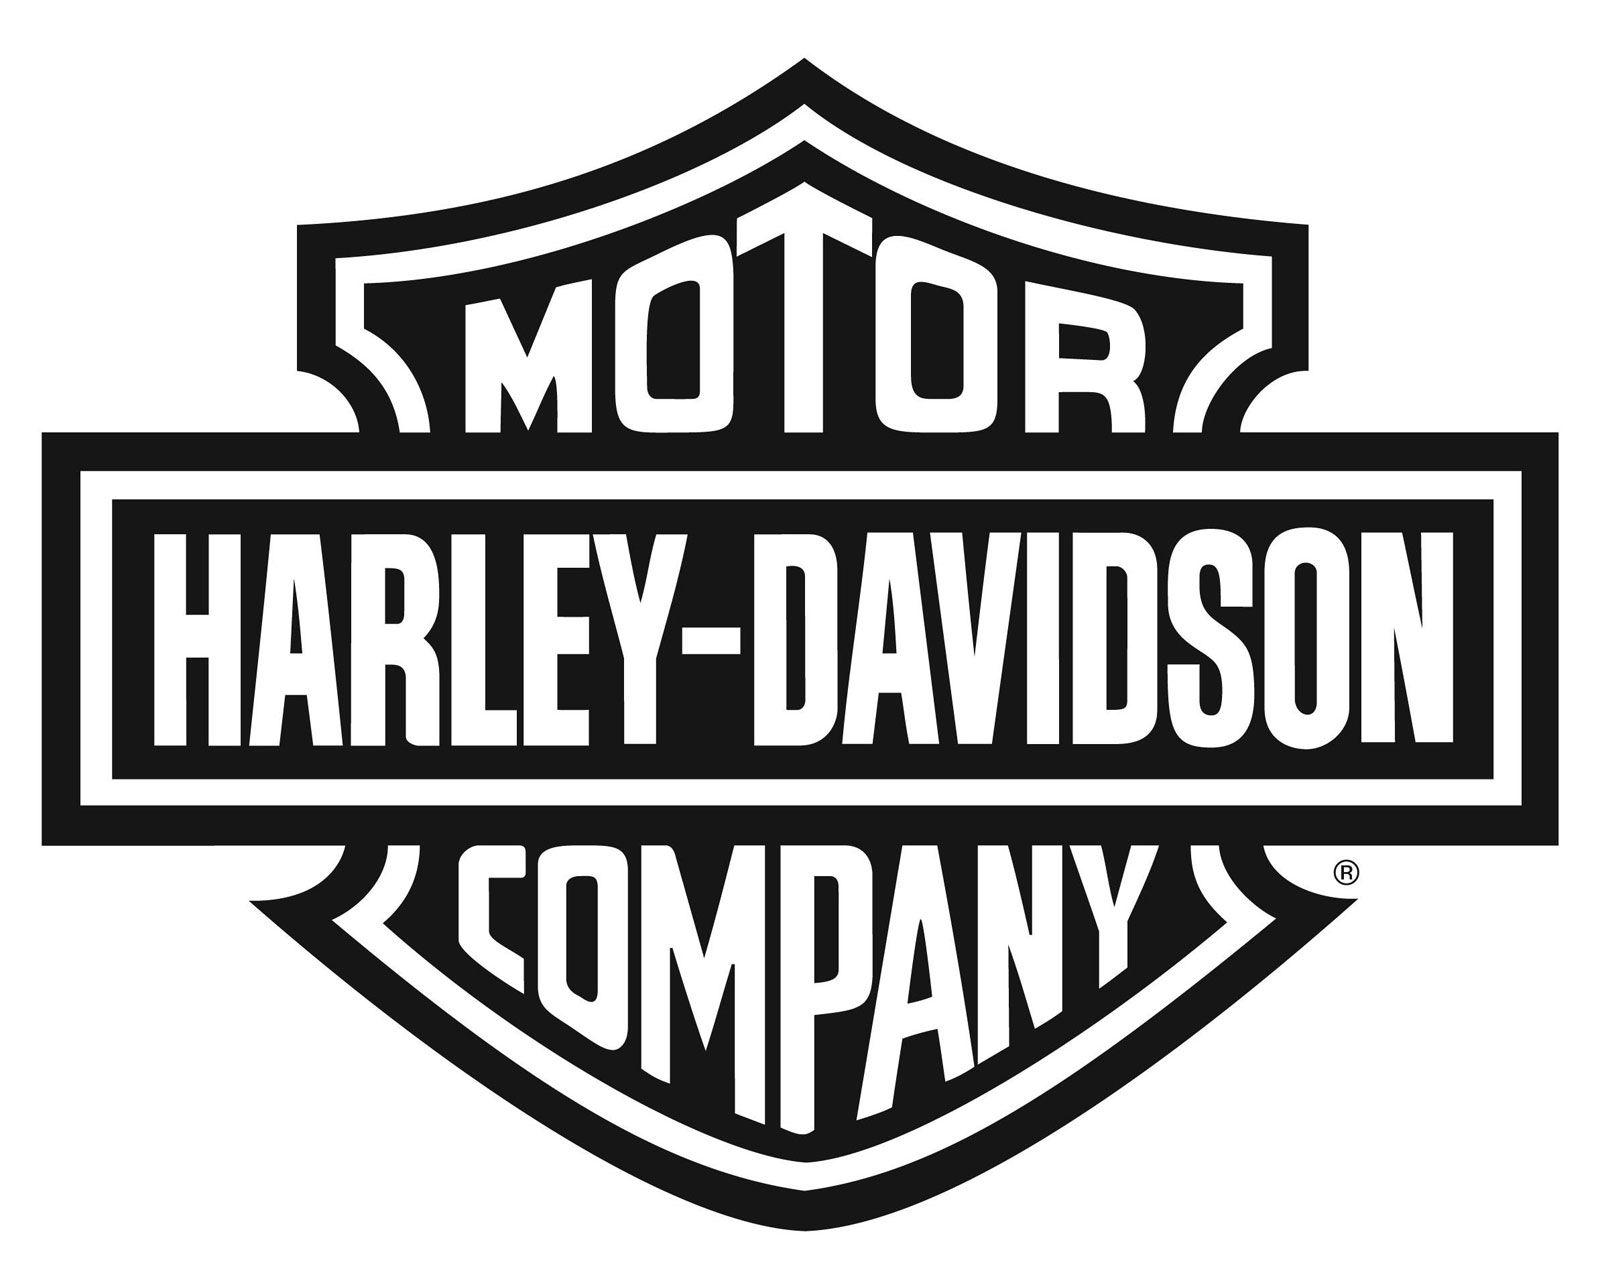 Black and White Harley-Davidson Logo - Harley Davidson Motorcycle Wallpaper Logo Blac 6876 Wallpaper